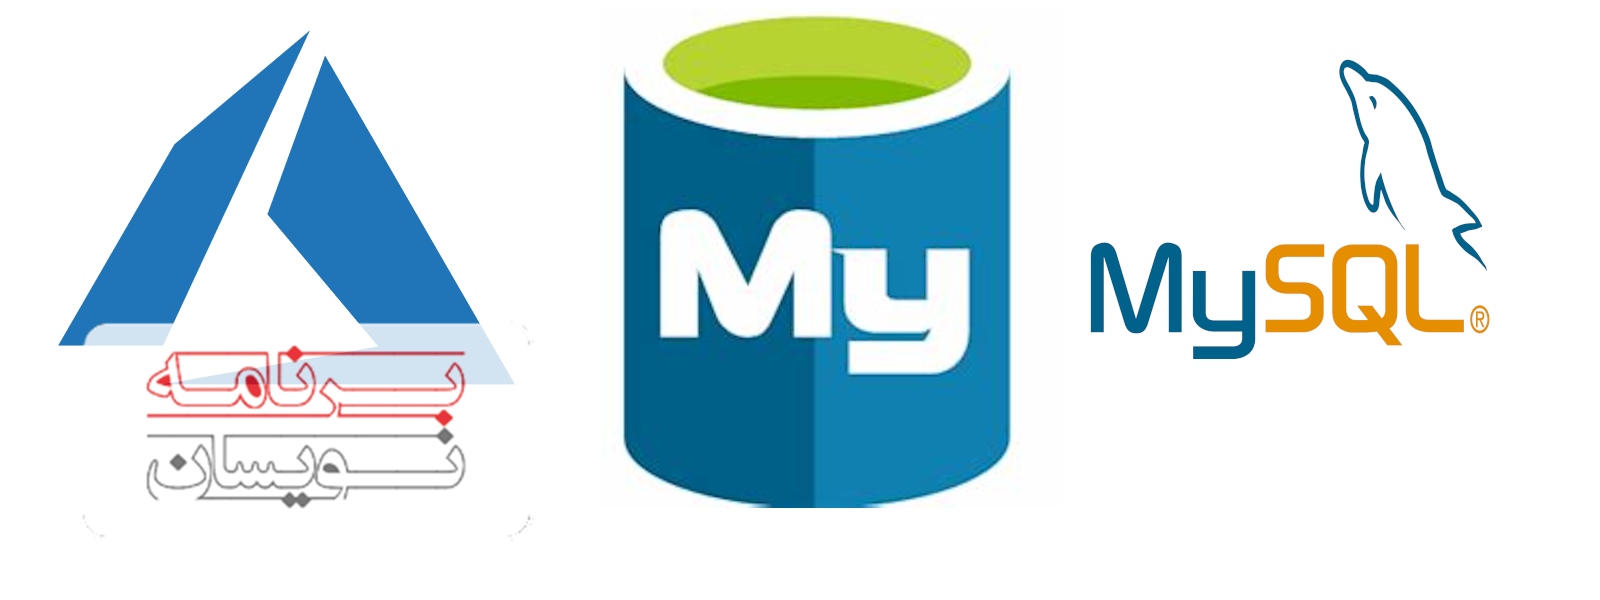  ویژگی های mySQL 